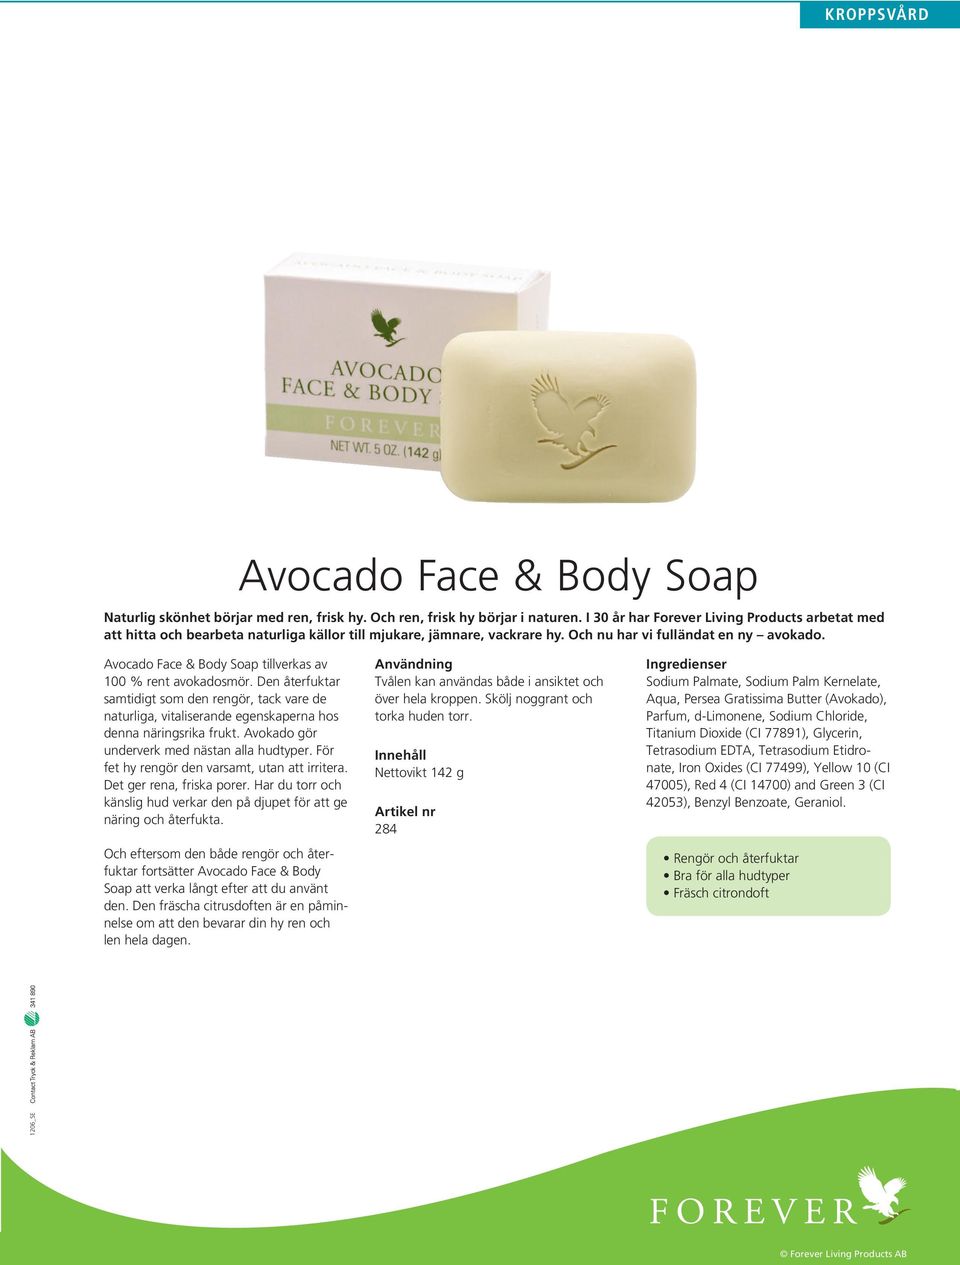 Avocado Face & Body Soap tillverkas av 100 % rent avokadosmör. Den återfuktar samtidigt som den rengör, tack vare de naturliga, vitaliserande egenskaperna hos denna näringsrika frukt.